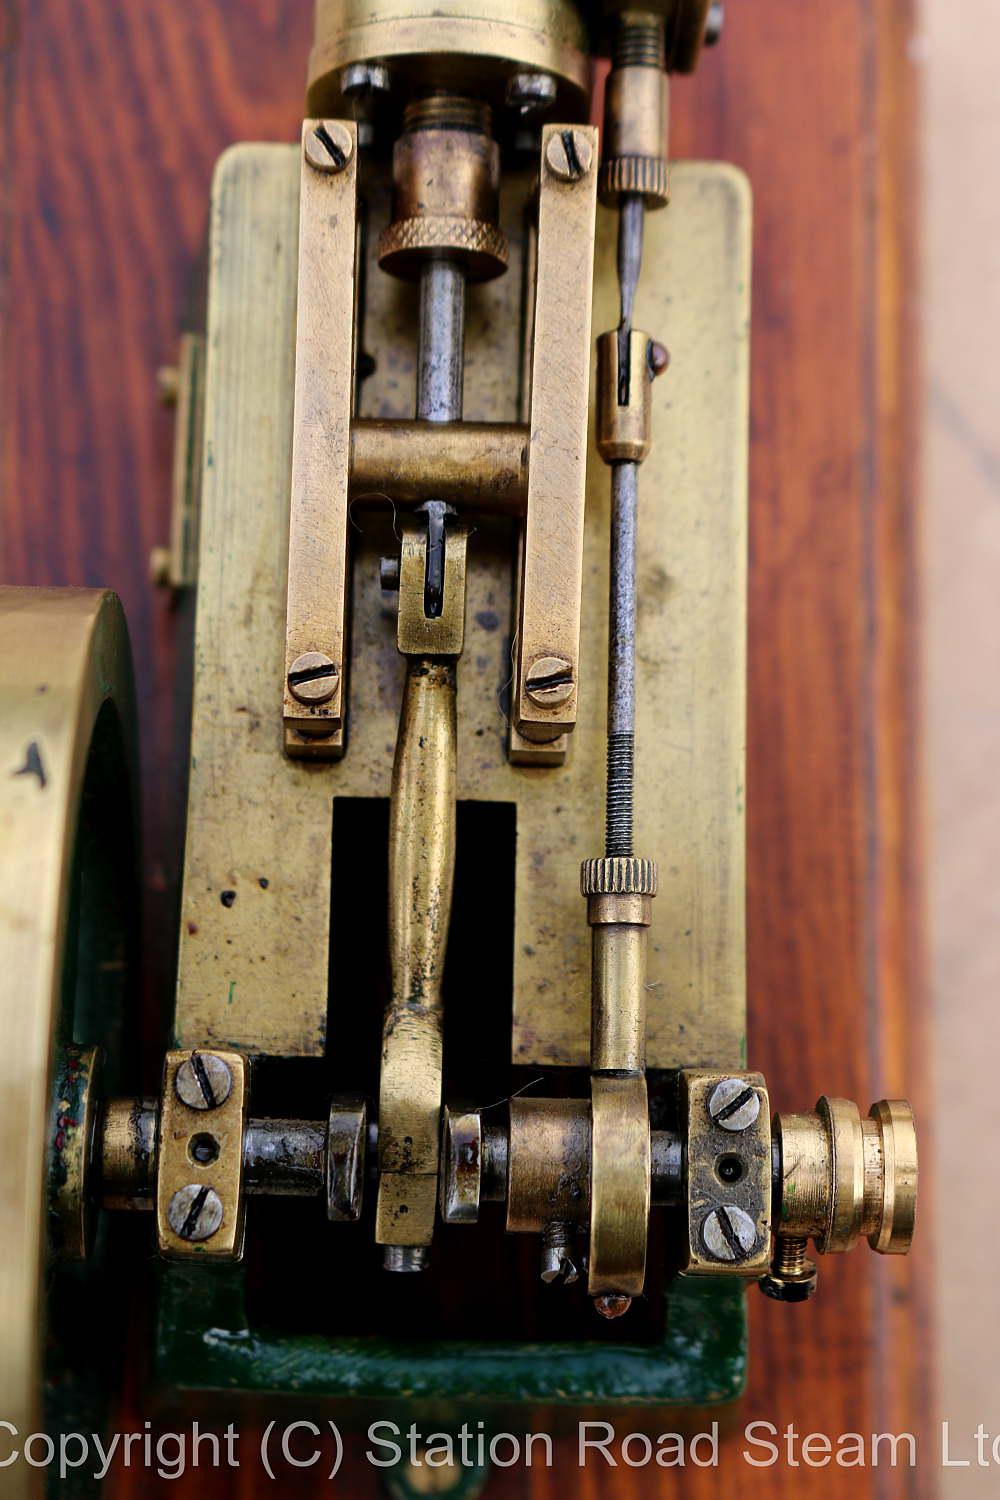 Small brass scratch-built horizontal mill engine